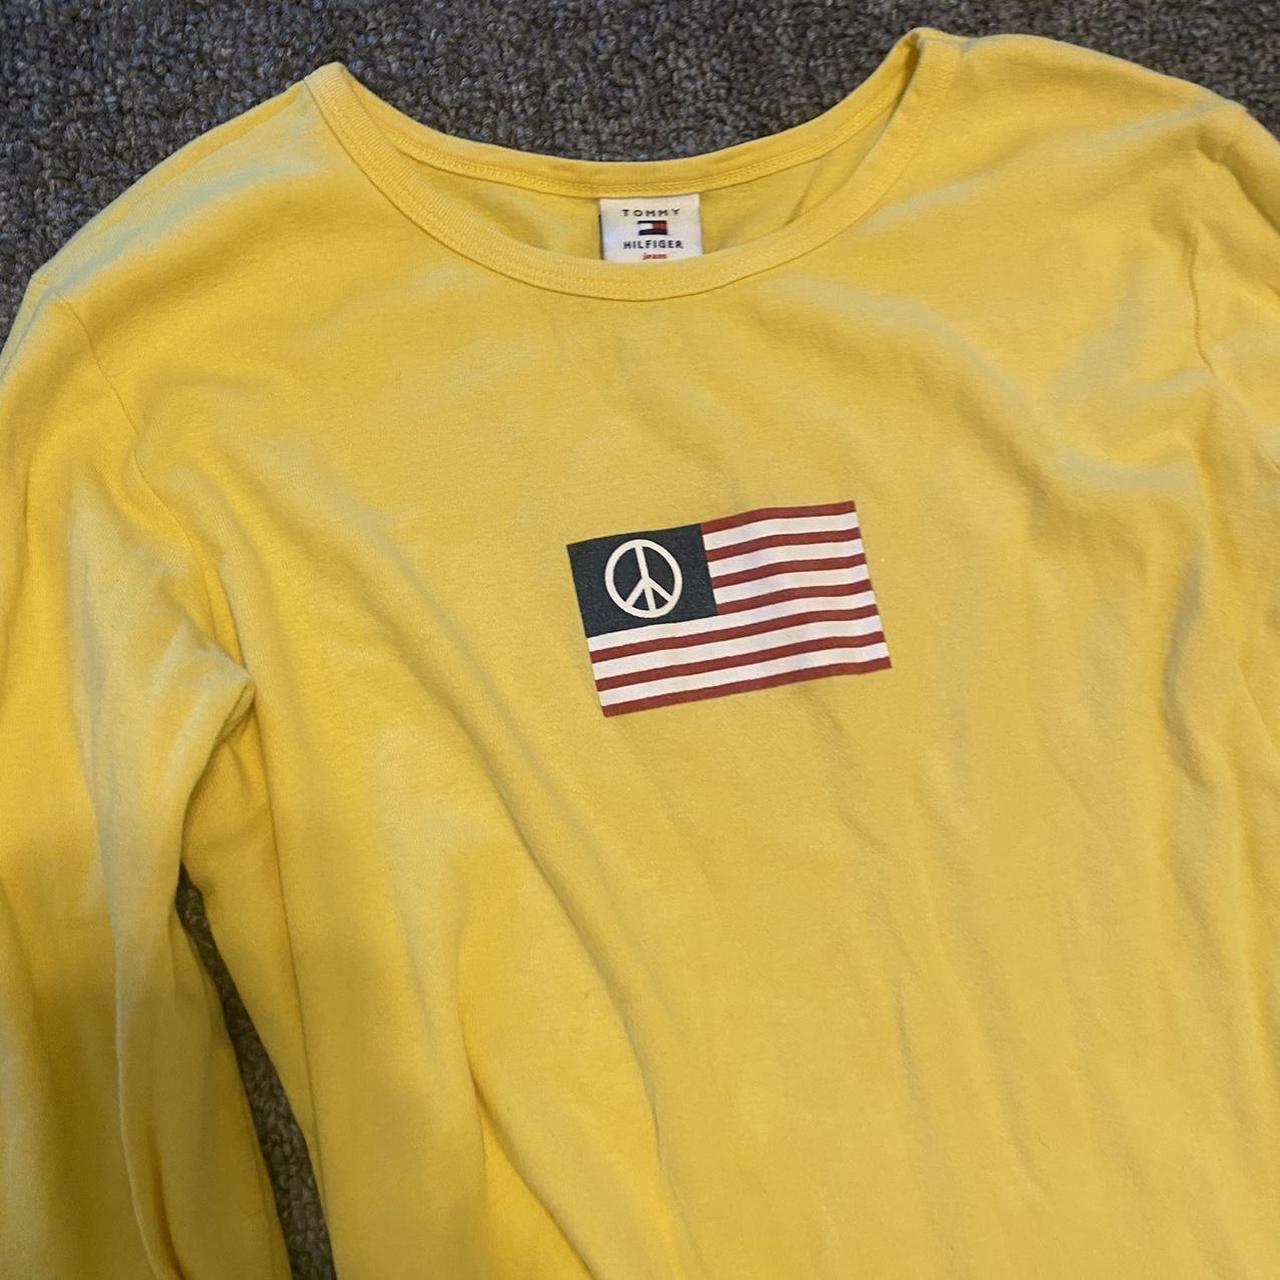 Tommy Hilfiger Women's Yellow Shirt | Depop